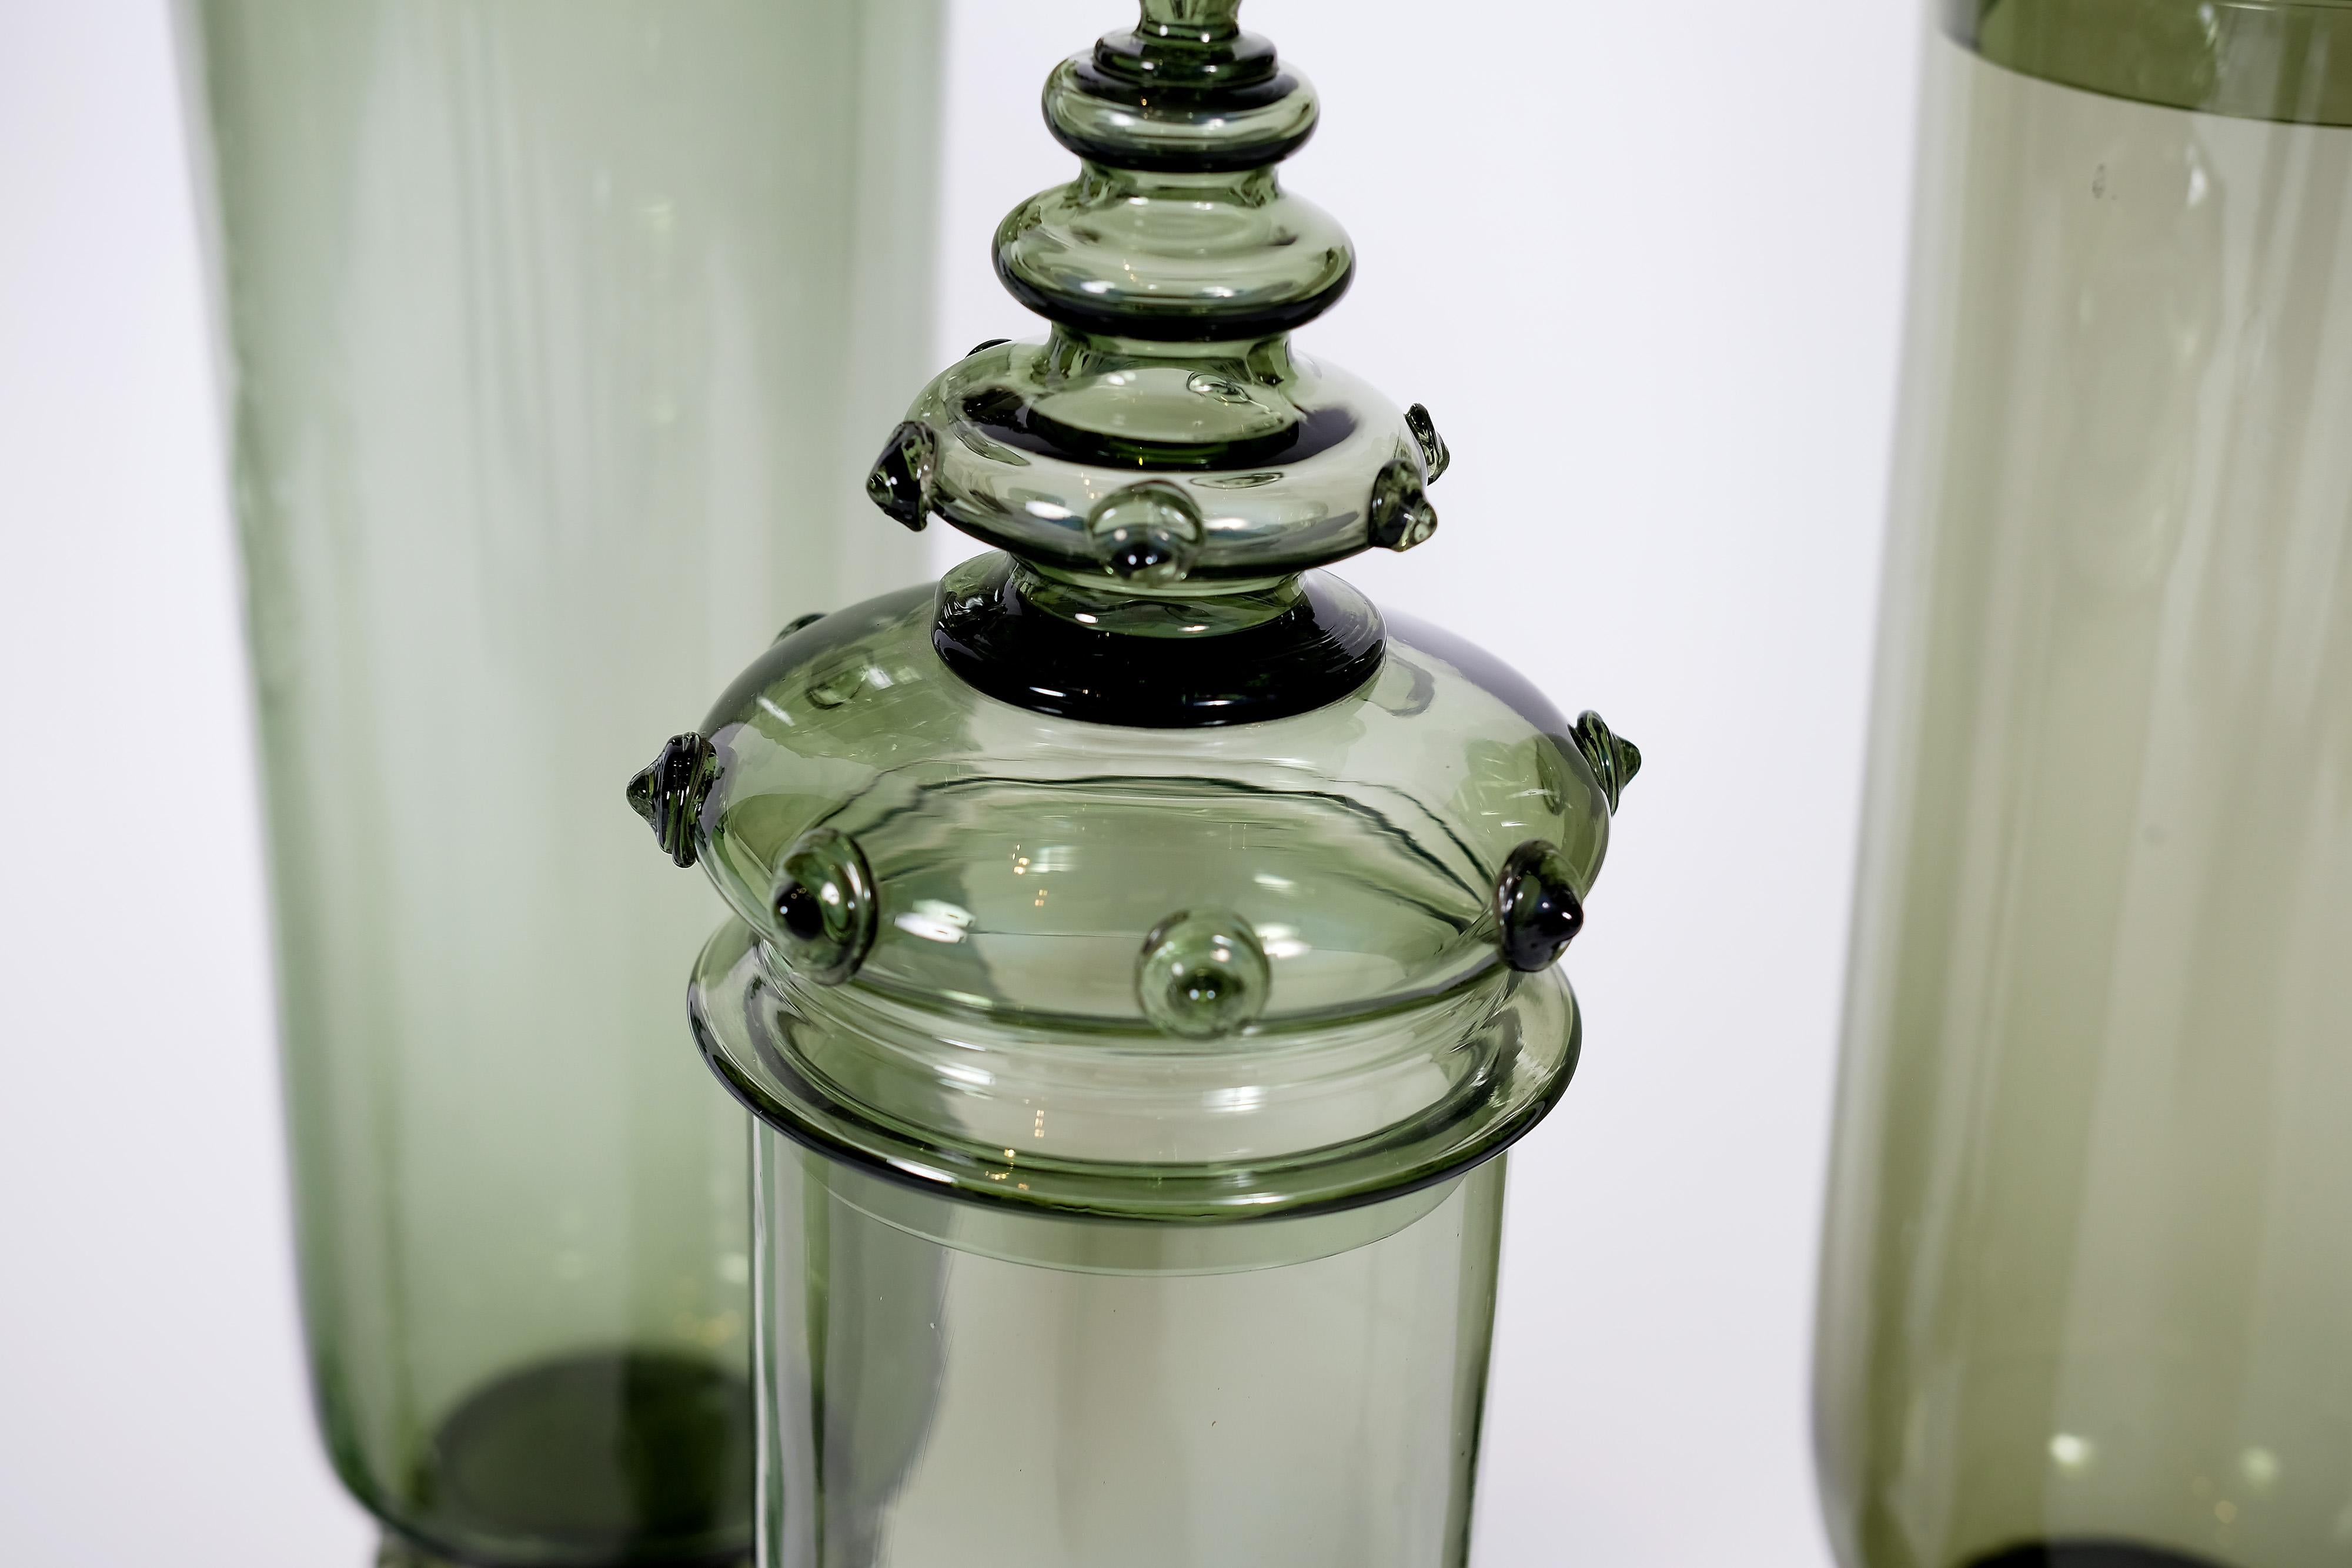 Ensemble de 5 pots d'apothicaire en verre vert du début du 20e siècle, fabriqués par les célèbres verriers autrichiens J.L. LOBMEYR.

TAILLES ALLANT DE
PLUS GRAND : 
32 pouces de hauteur
7.5 pouces de large
Jusqu'à SHORTEST
19 pouces de